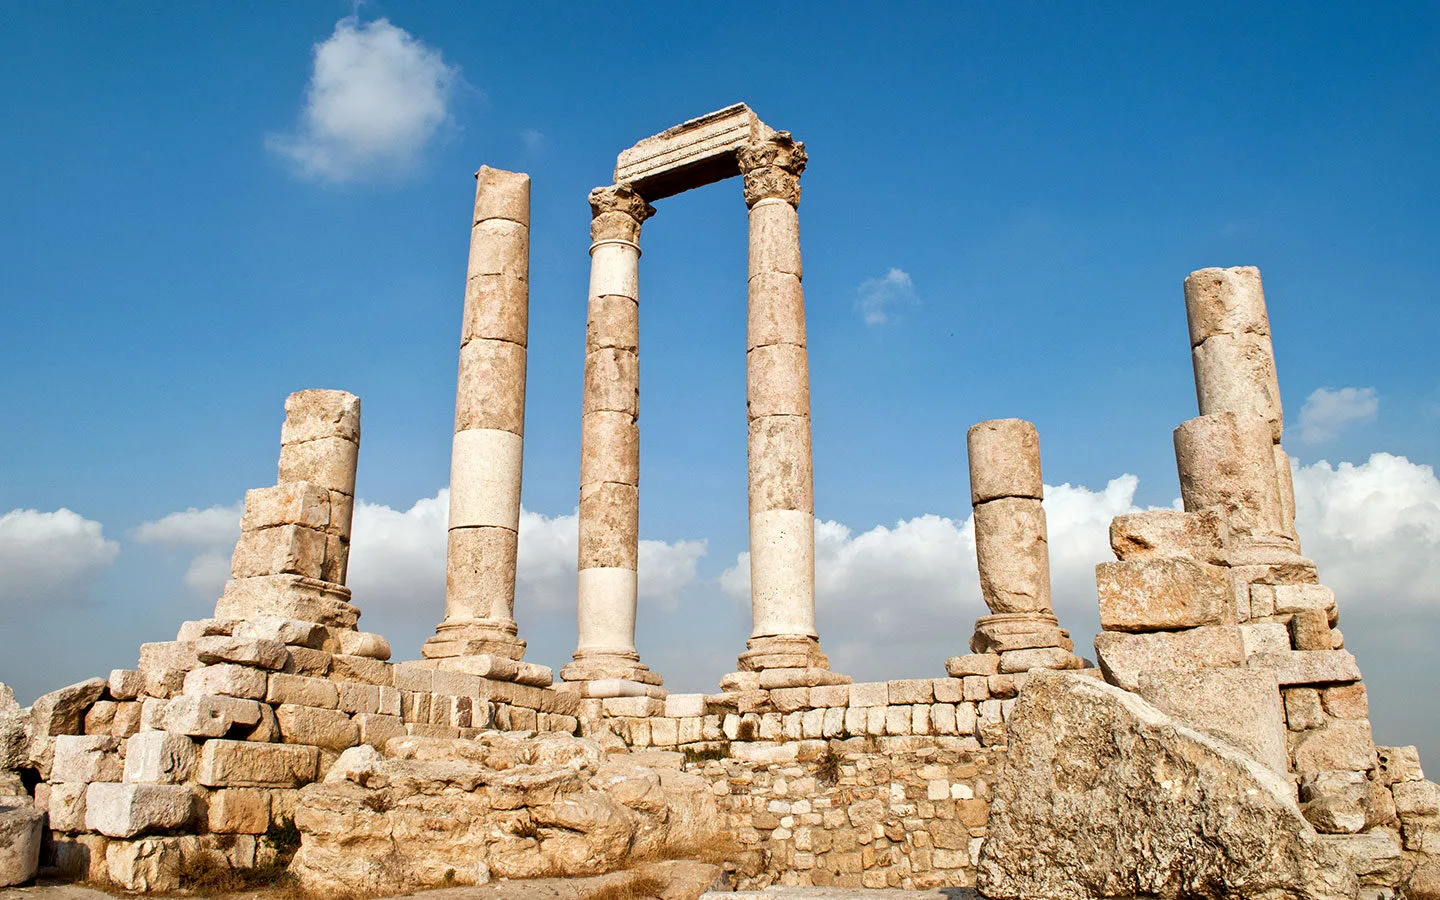 The Temple of Hercules at Amman citadel